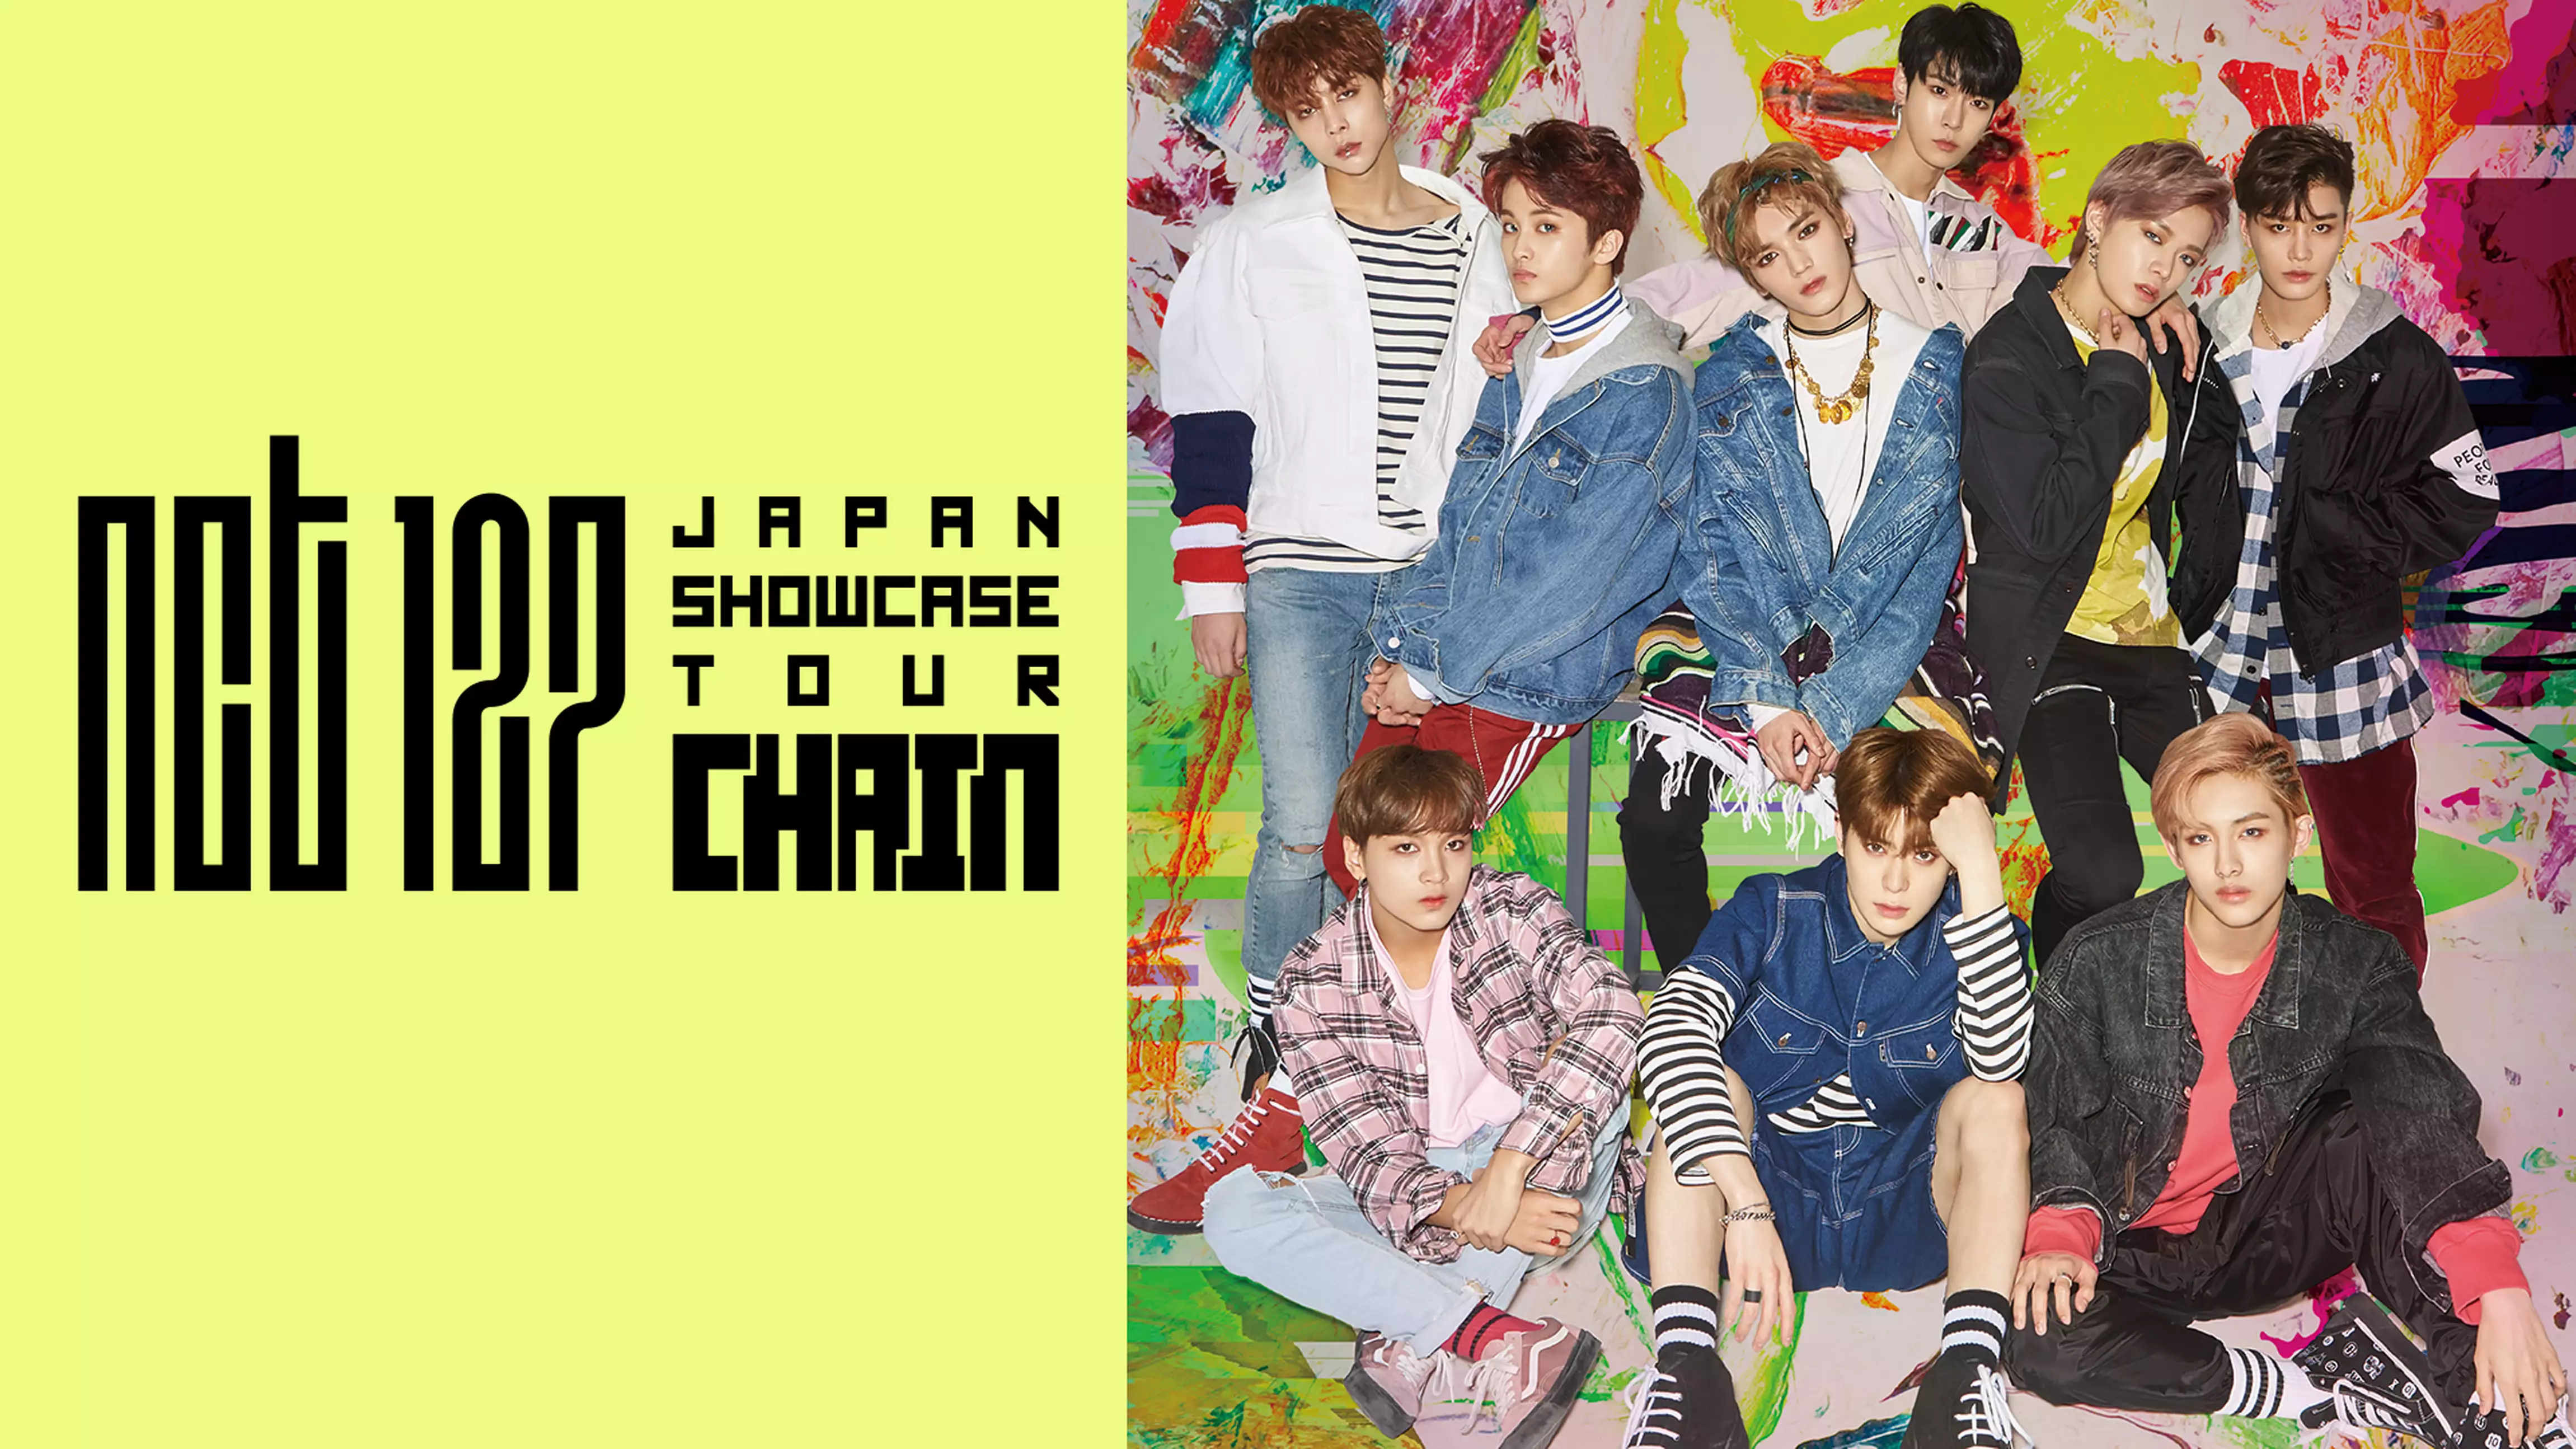 NCT 127 JAPAN Showcase Tour “chain”